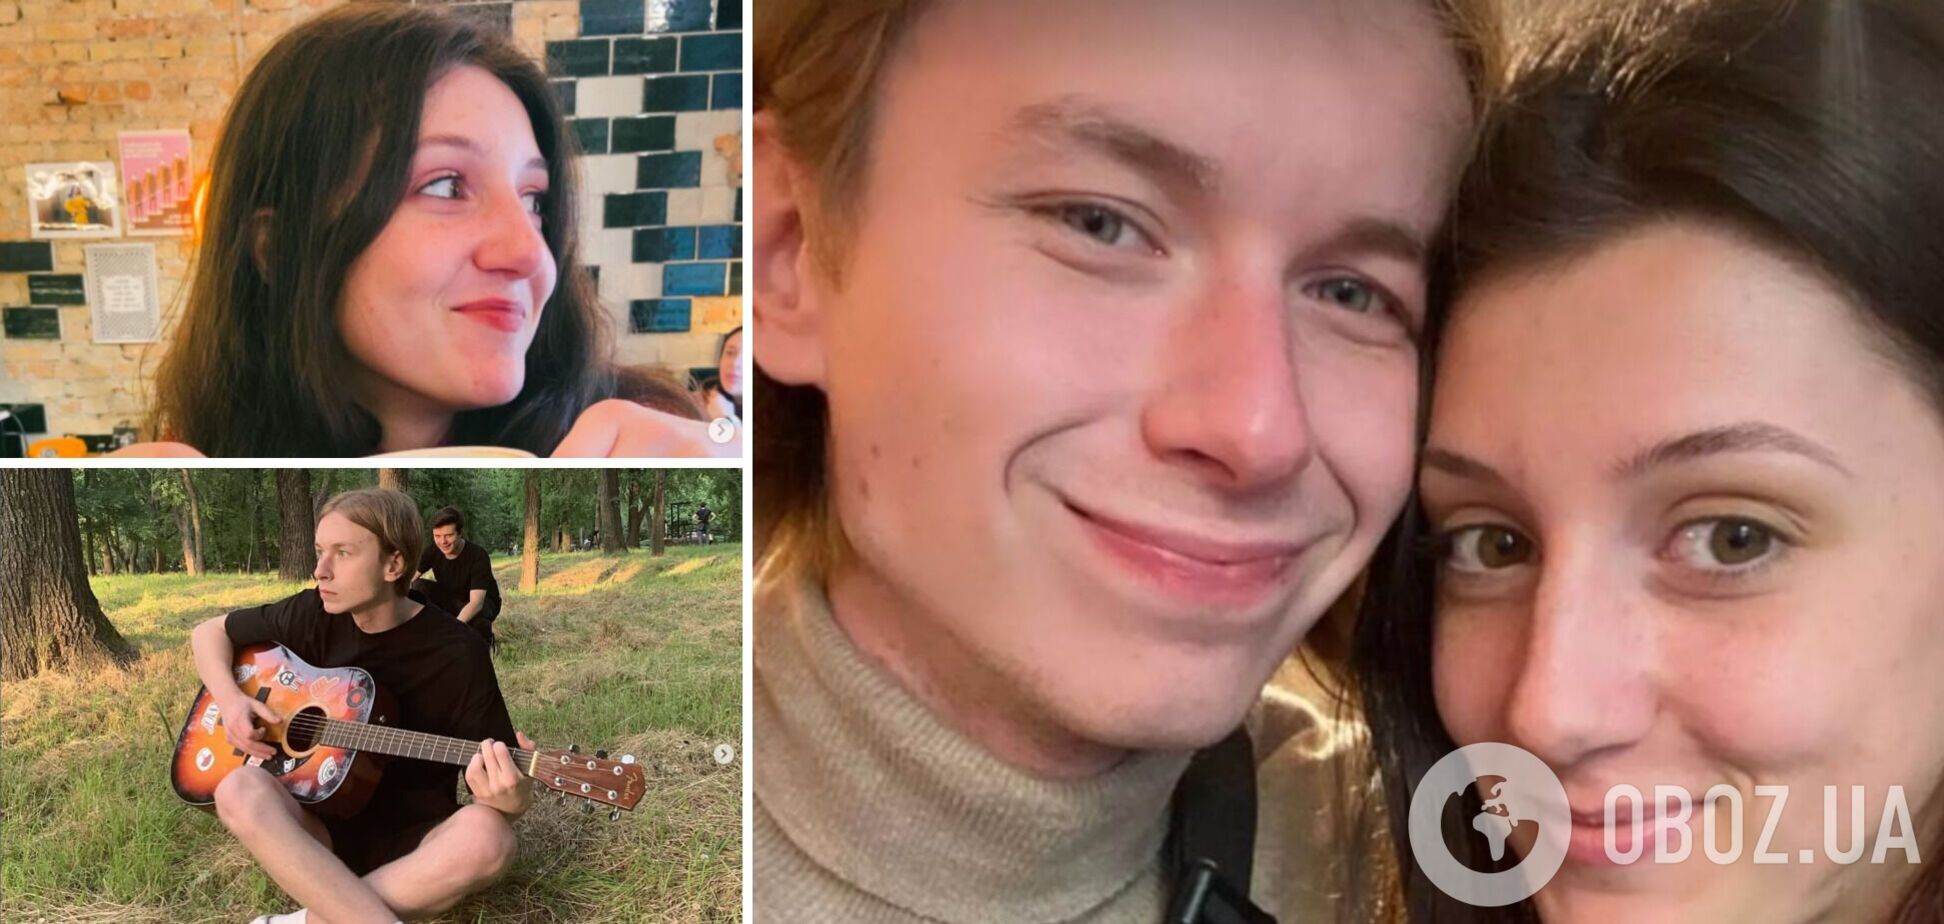 Они ценили каждую минуту жизни: в Запорожье российская ракета убила юную пару музыканта и баристы